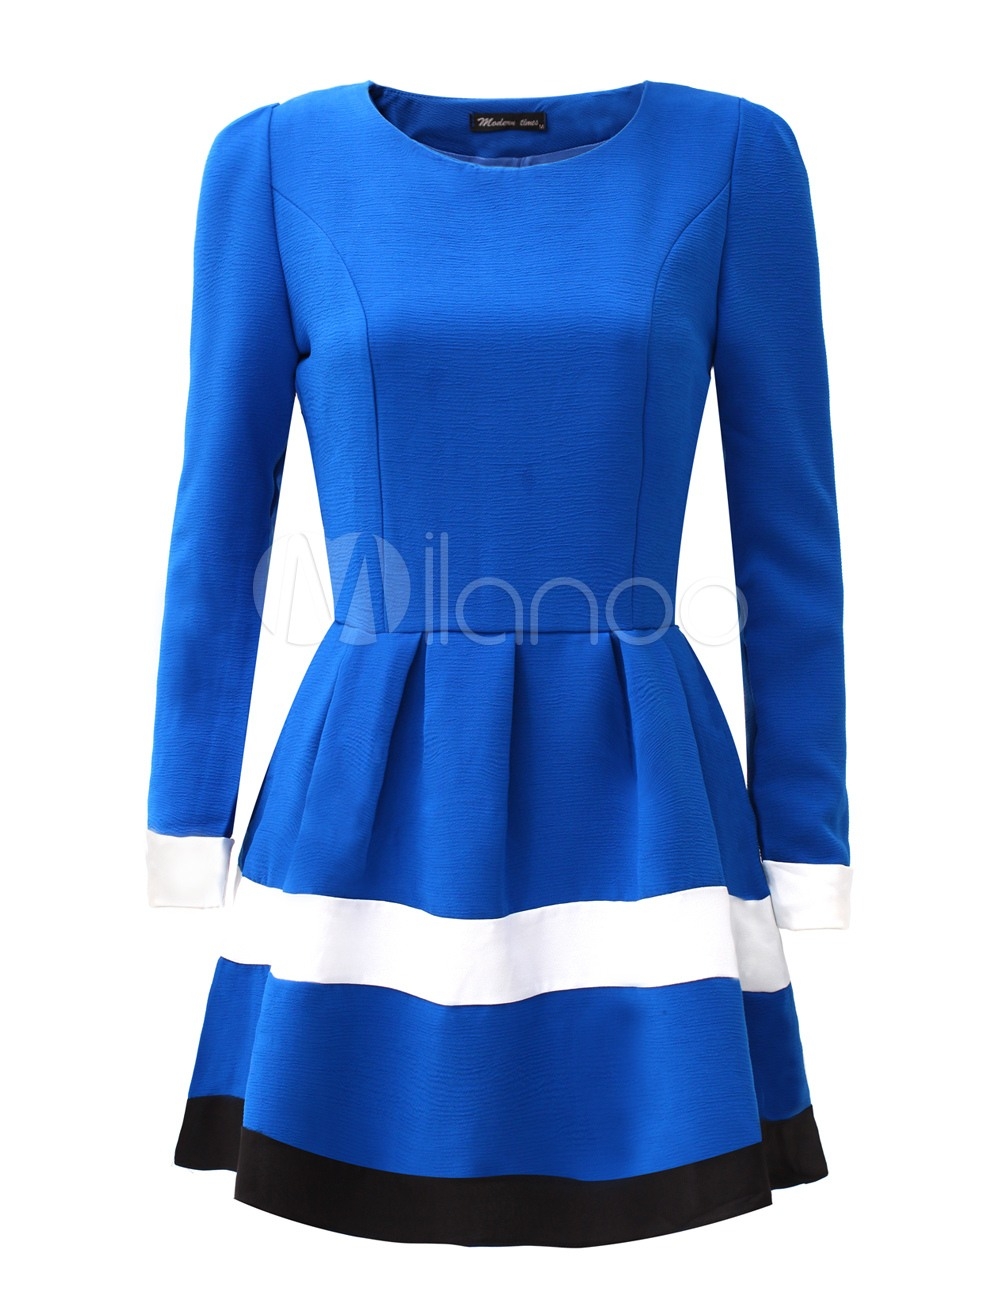 10 Cool Blaues Kleid Mit Ärmeln Galerie13 Cool Blaues Kleid Mit Ärmeln für 2019